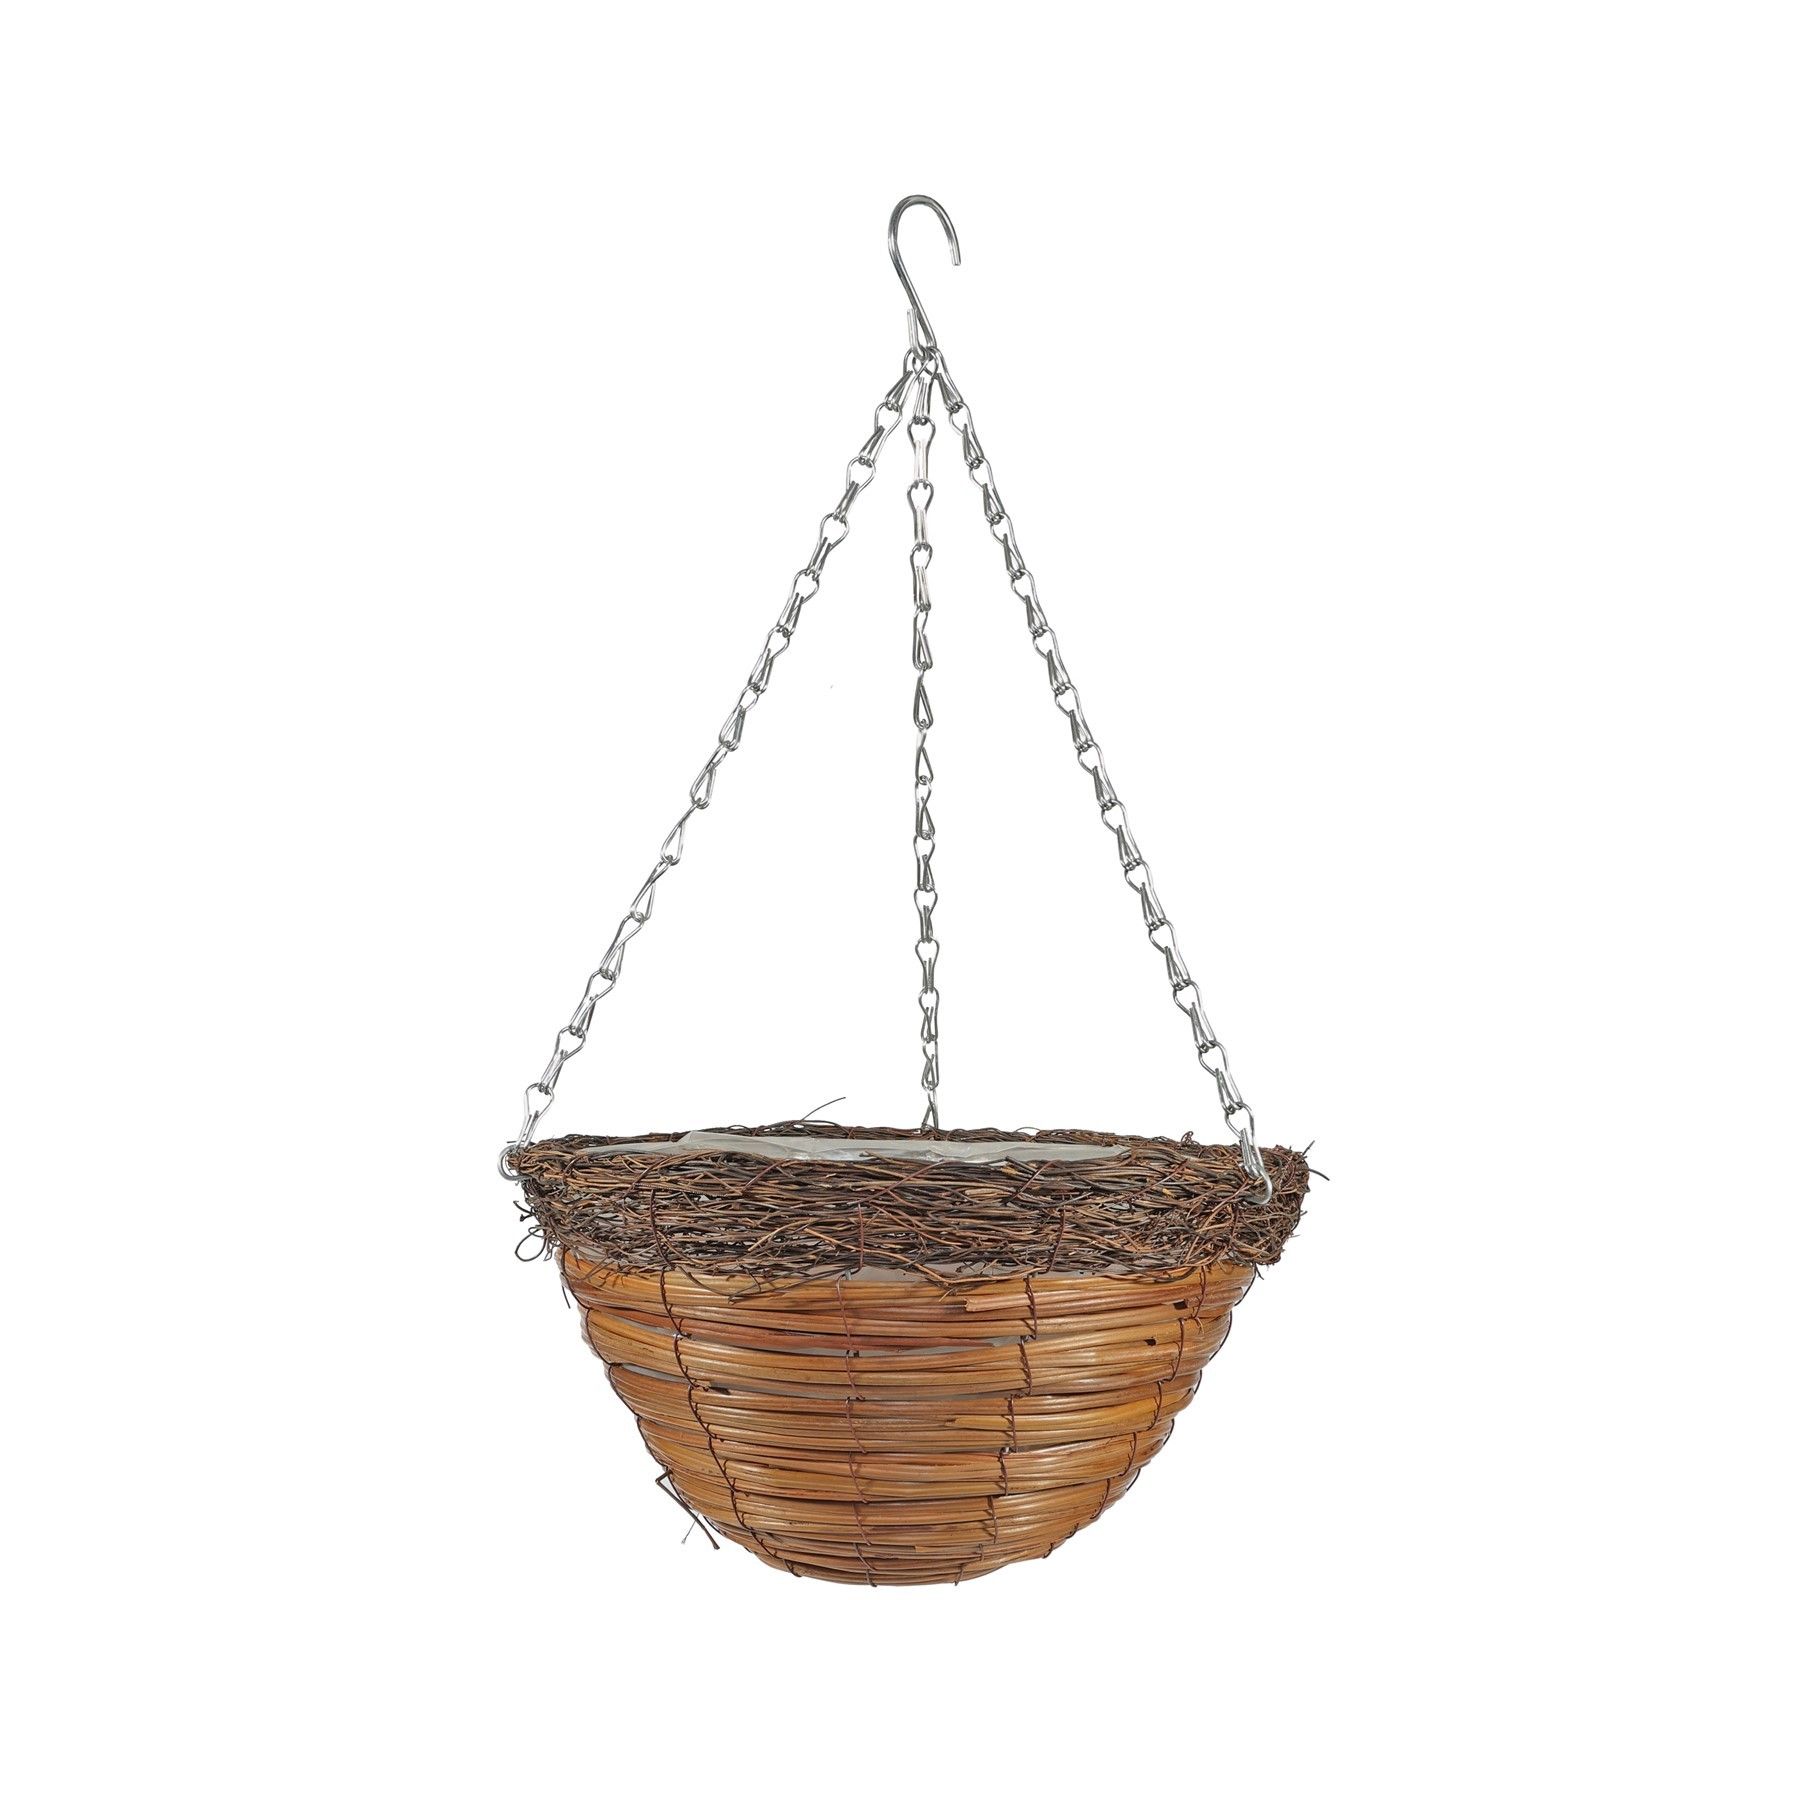 12" Round Buckden Hanging Basket